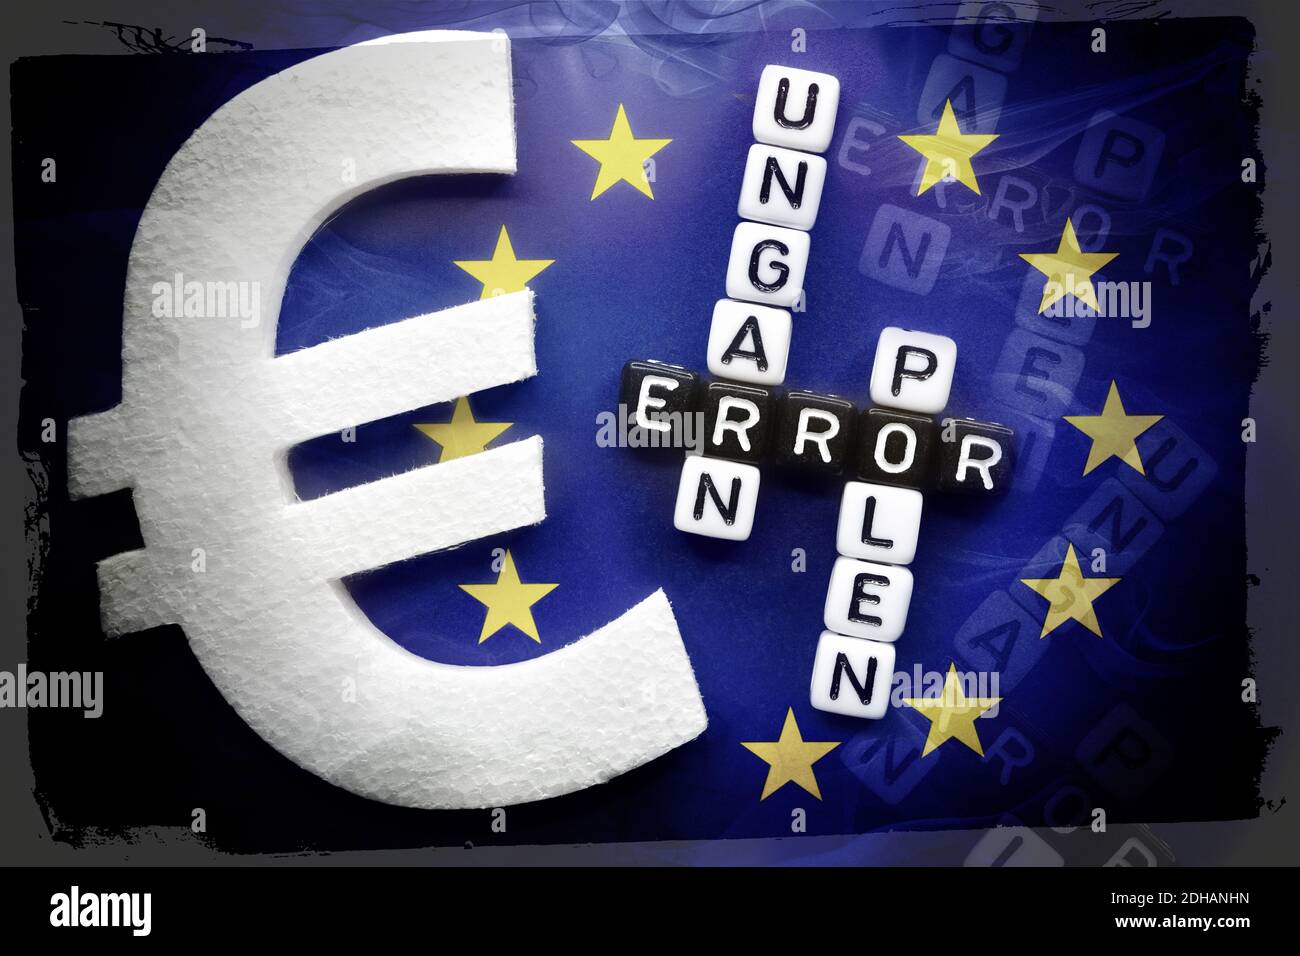 FOTOMONTAGE, EU-Fahne mit den Schriftzügen Error, Ungarn und Polen mit Eurozeichen, EU-Haushaltsstreit Stock Photo